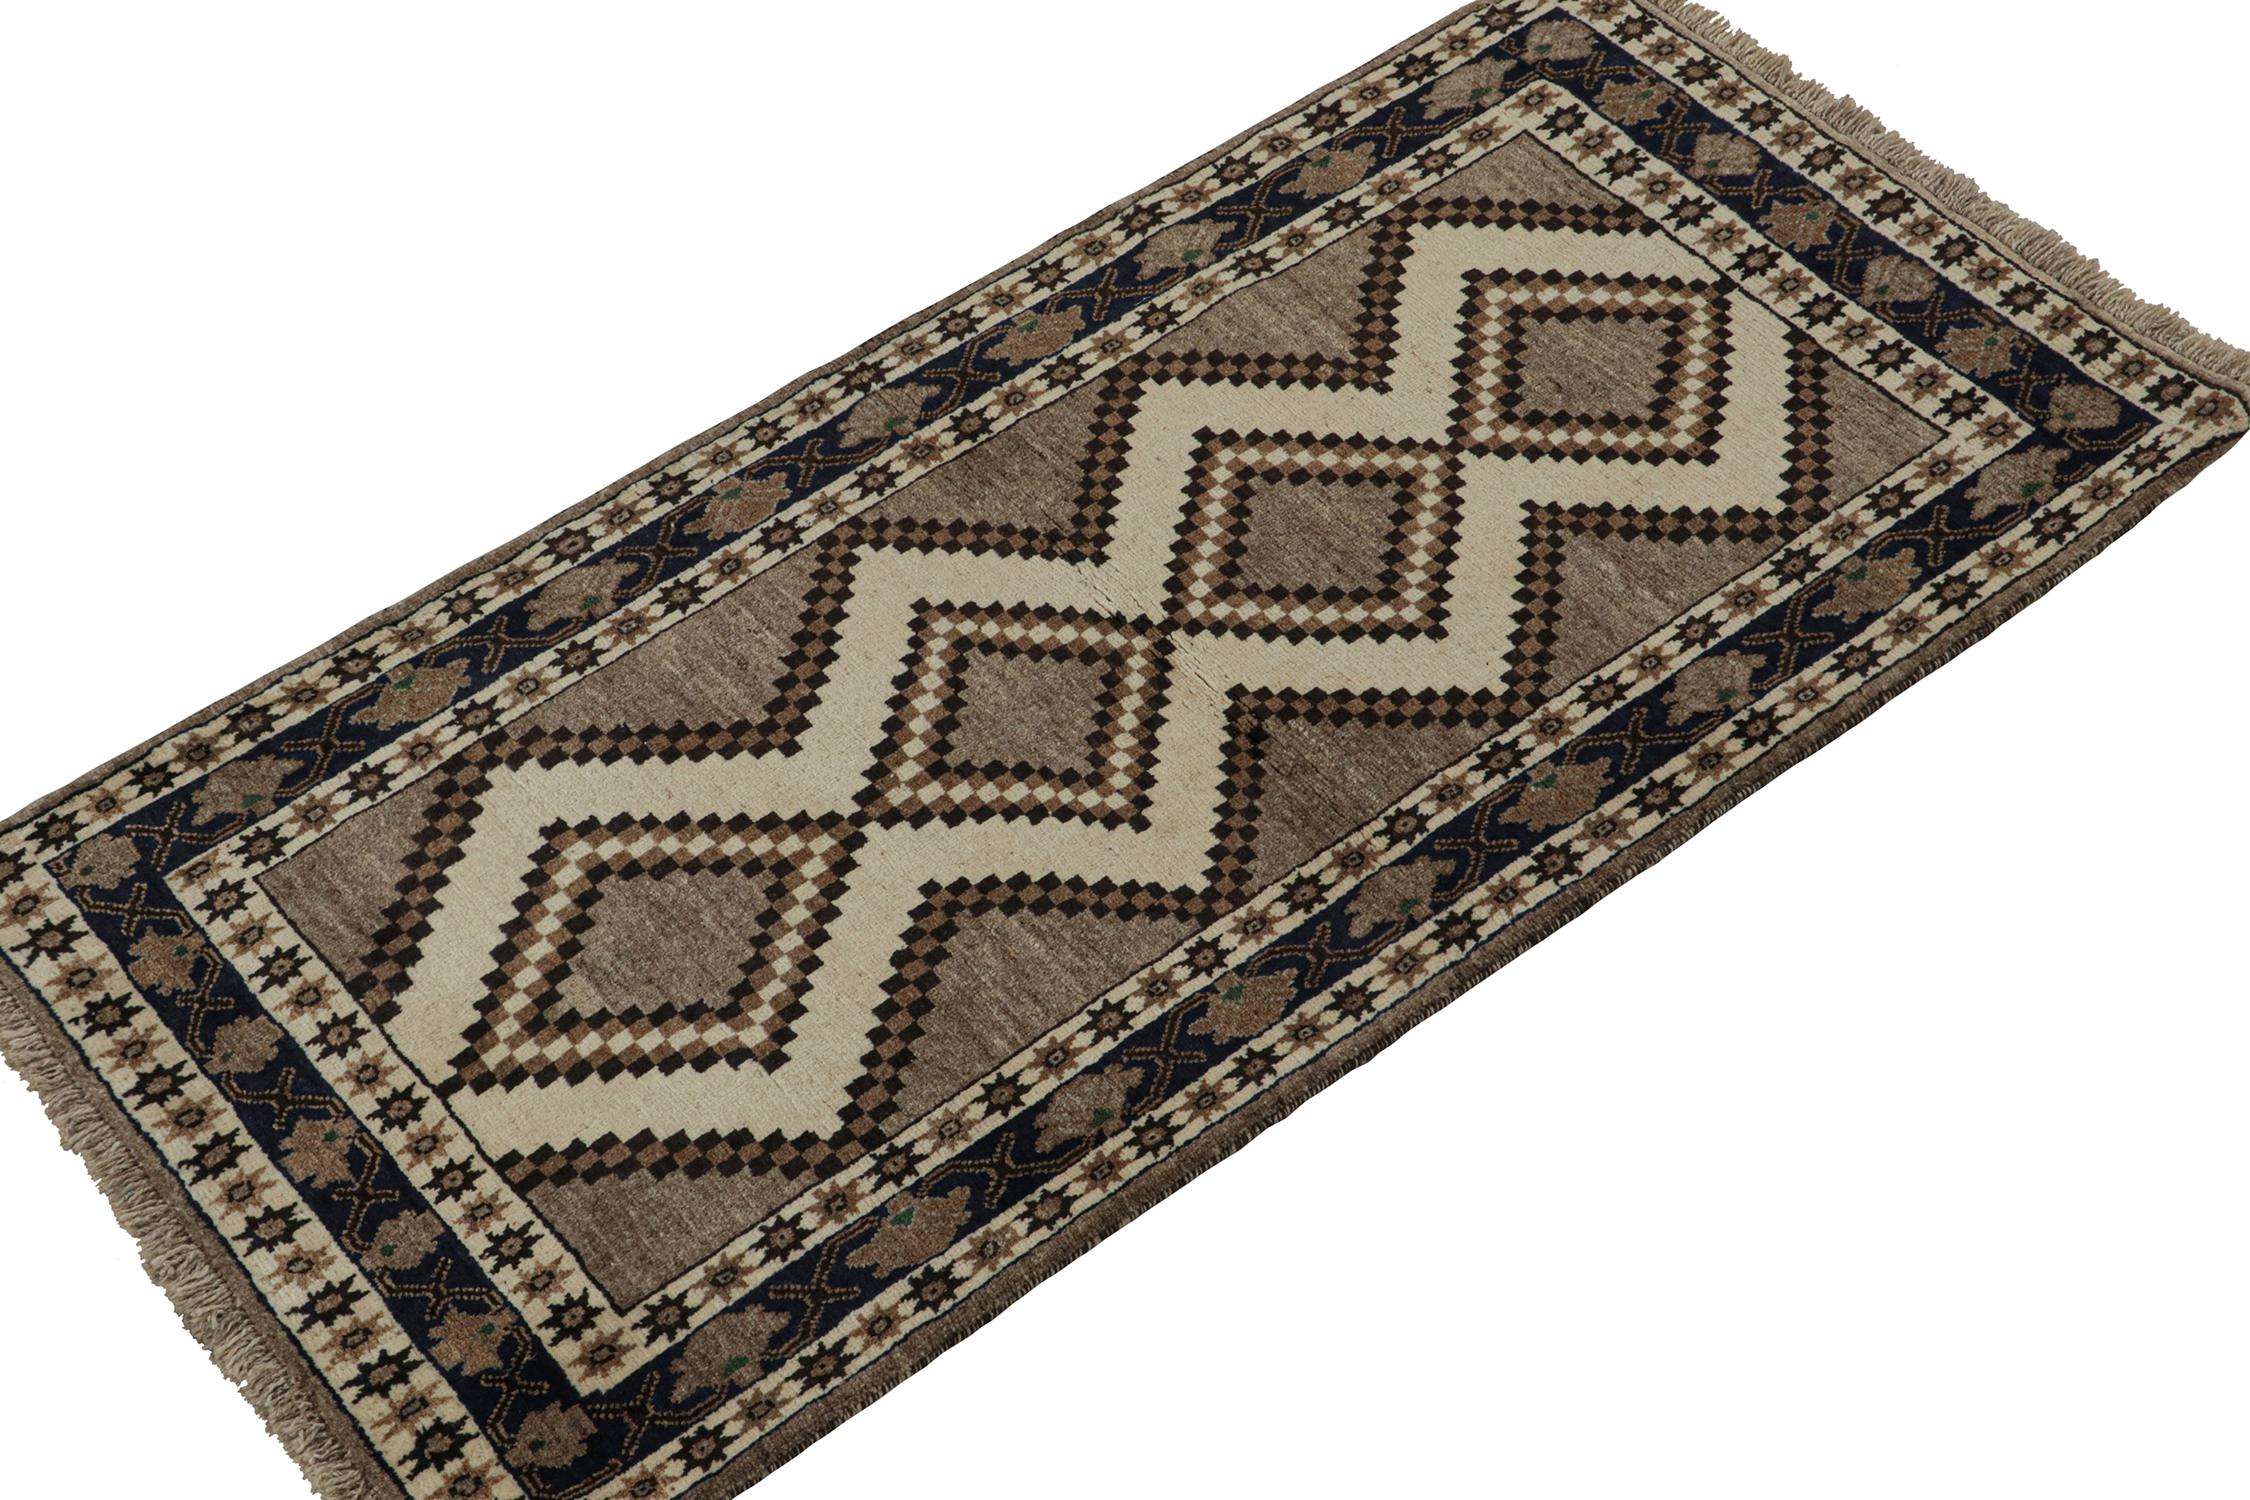 Ein alter persischer Gabbeh-Teppich (4x7) aus der neuesten Kollektion von Rug & Kilim, die seltene Stammesstücke enthält. Handgeknüpft aus Wolle, ca. 1950-1960.

Über das Design:

Dieses Stück aus der Mitte des Jahrhunderts zeigt beige-braune